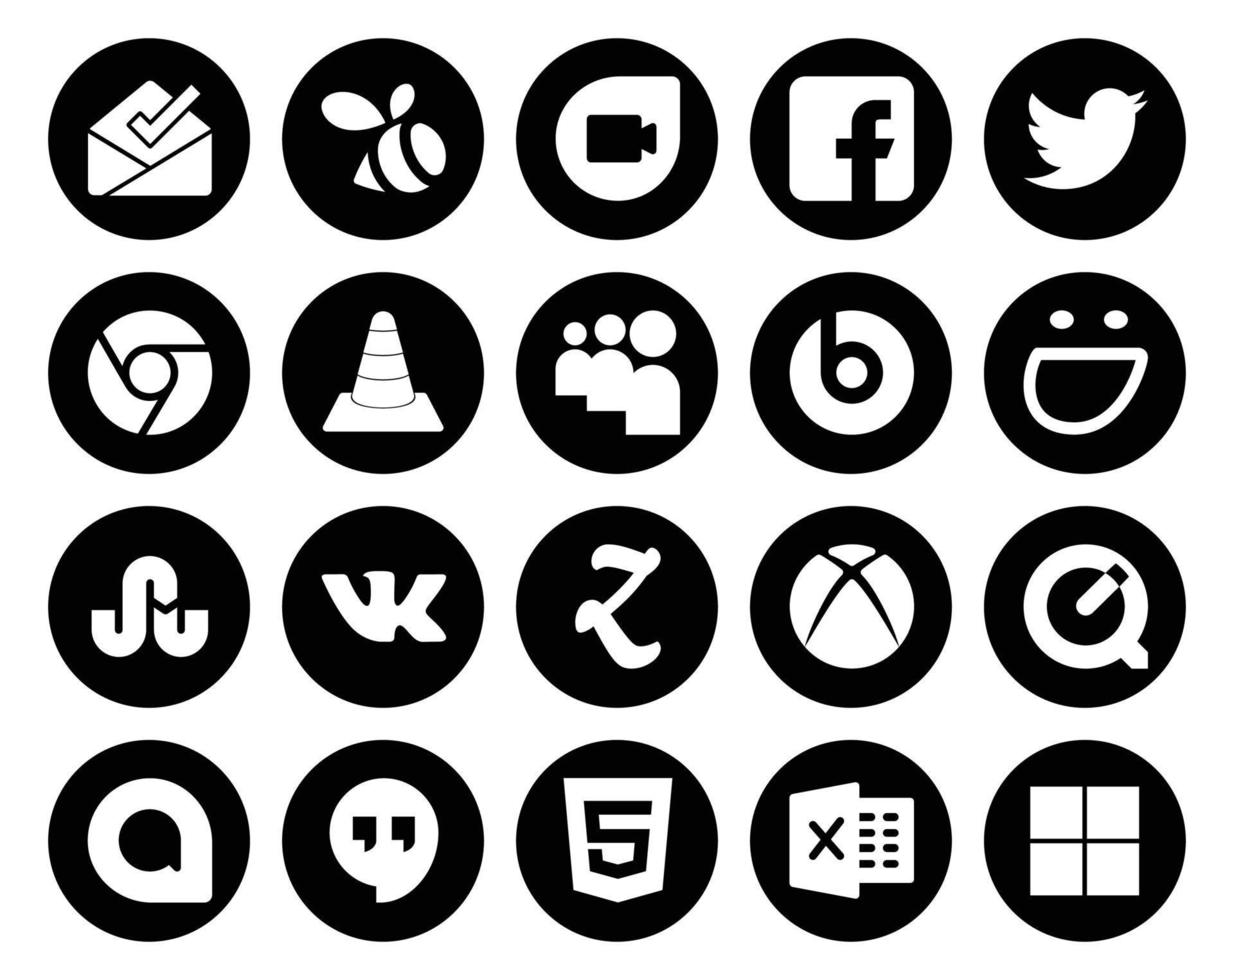 20 social media ikon packa Inklusive snabb tid zooverktyg media vk självbelåten vektor